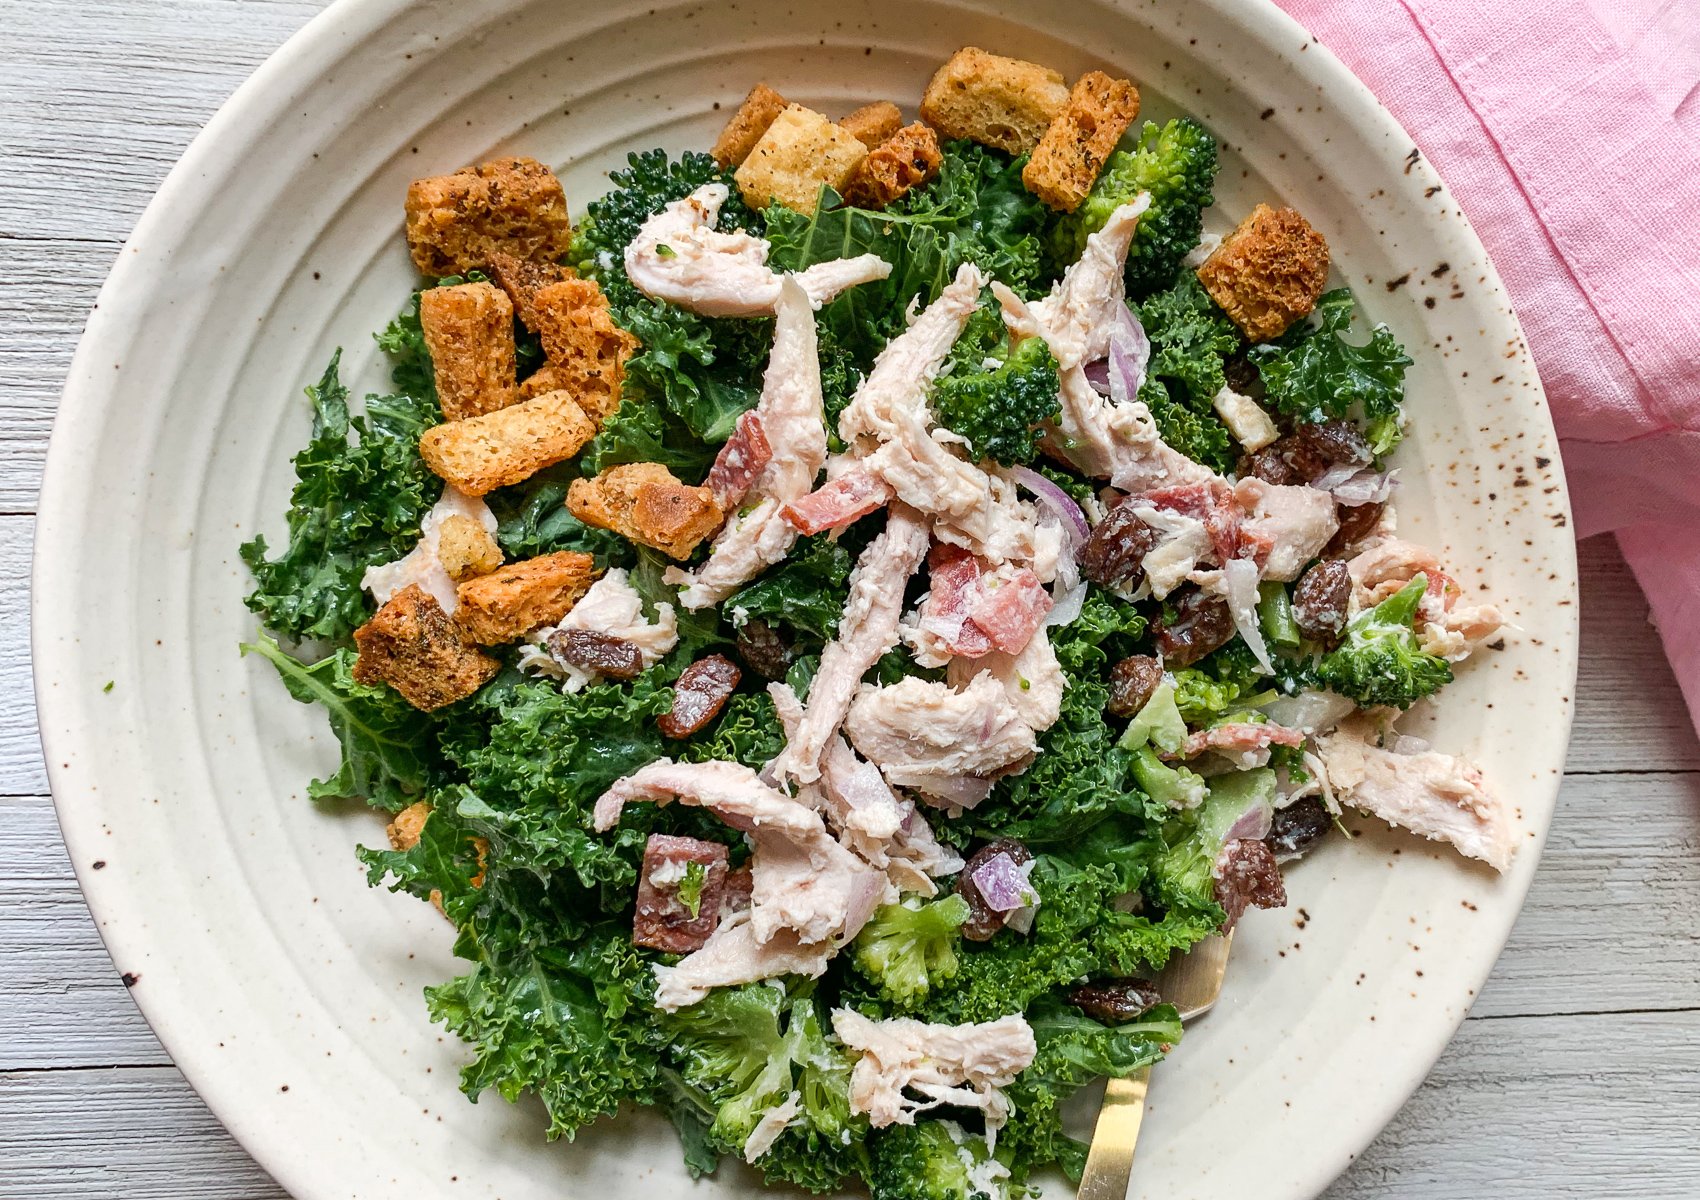 chicken salad, kale, gluten free croutons,